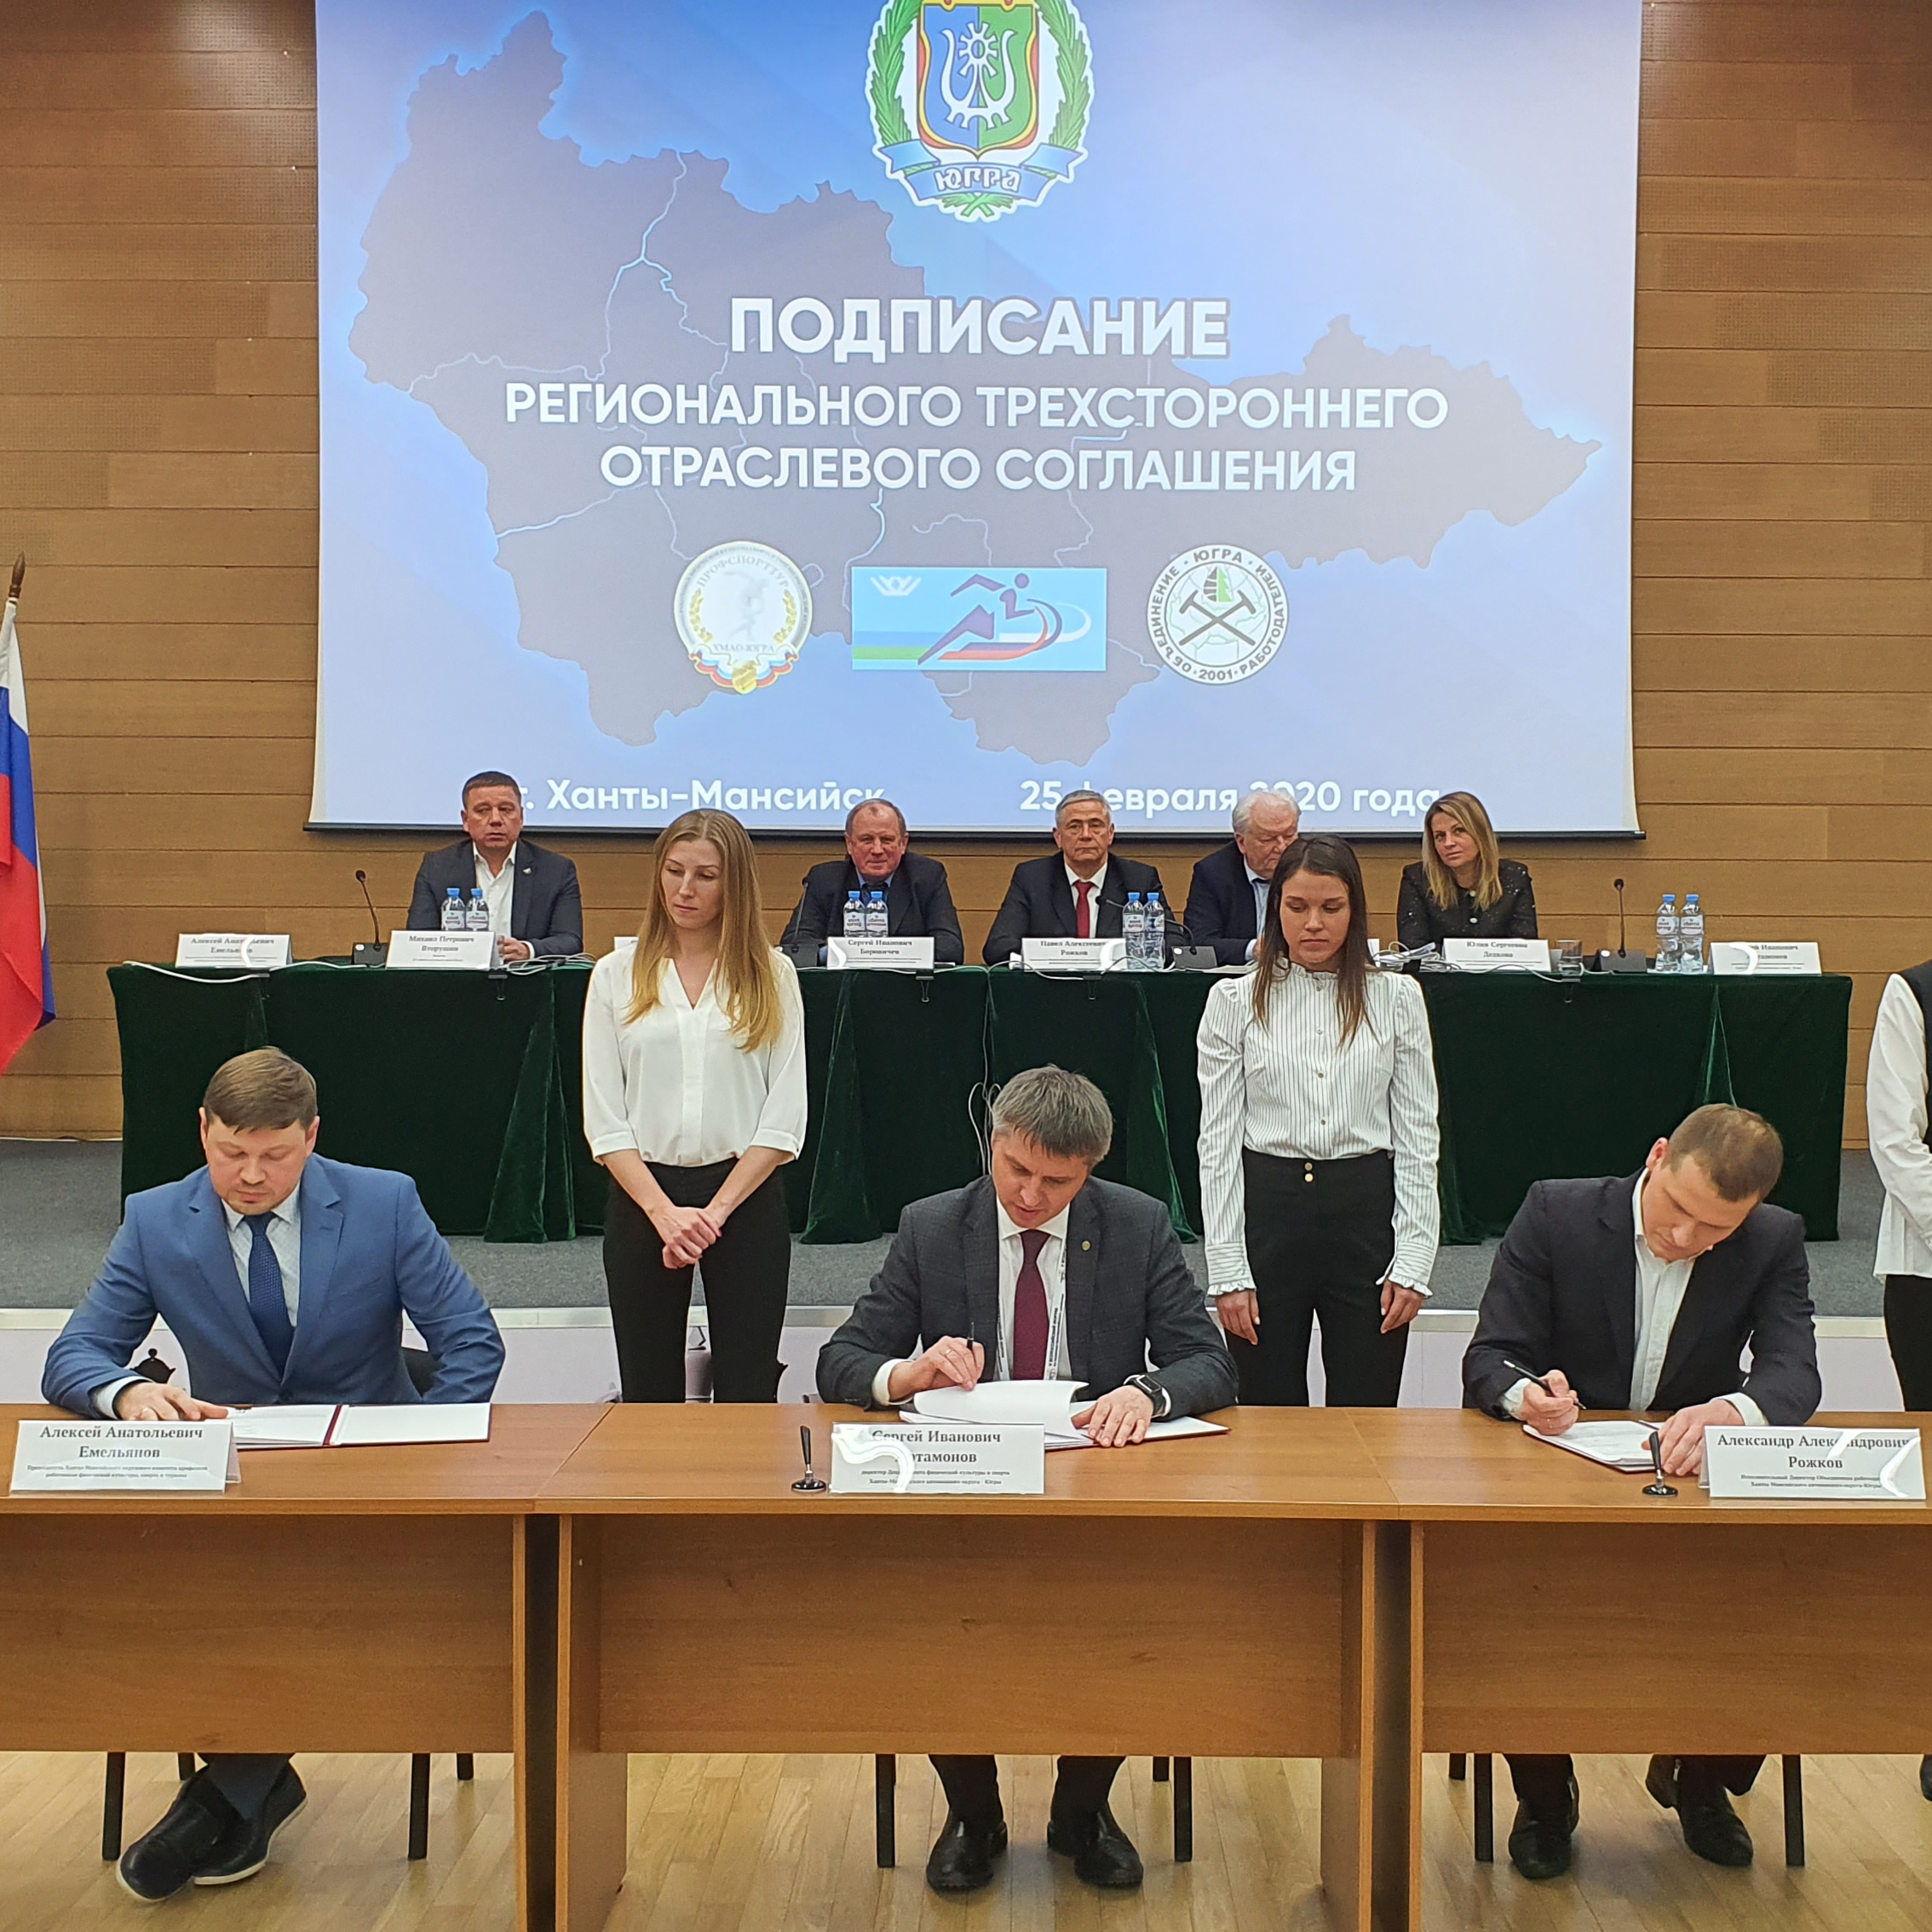 В Ханты-Мансийске состоялось подписание регионального трёхстороннего отраслевого соглашения по организациям физической культуры и спорта на 2020-2022 годы